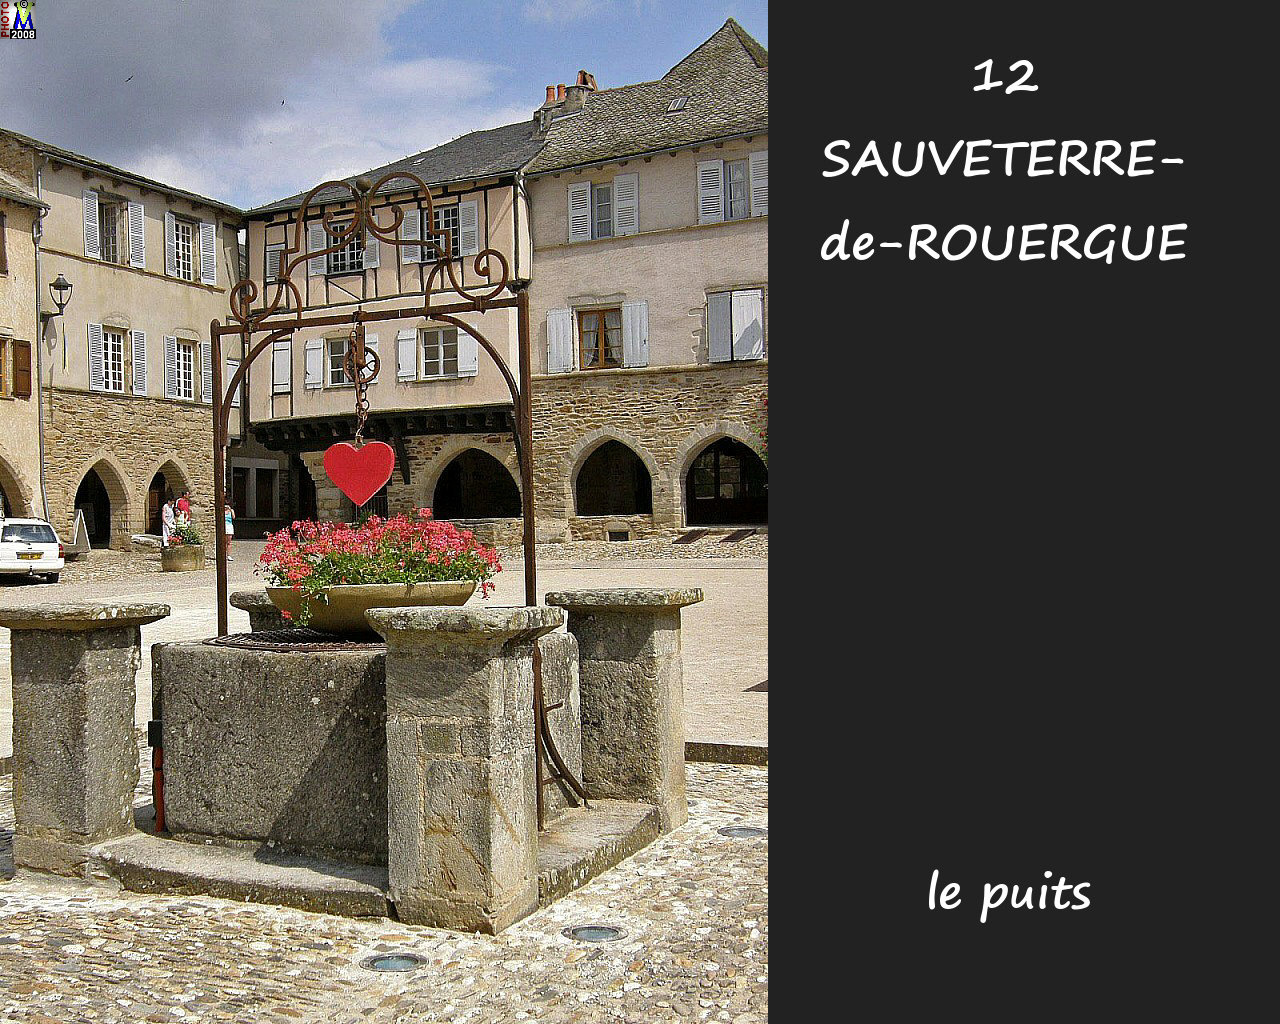 12SAUVETERRE-ROUERGUE_puits_100.jpg